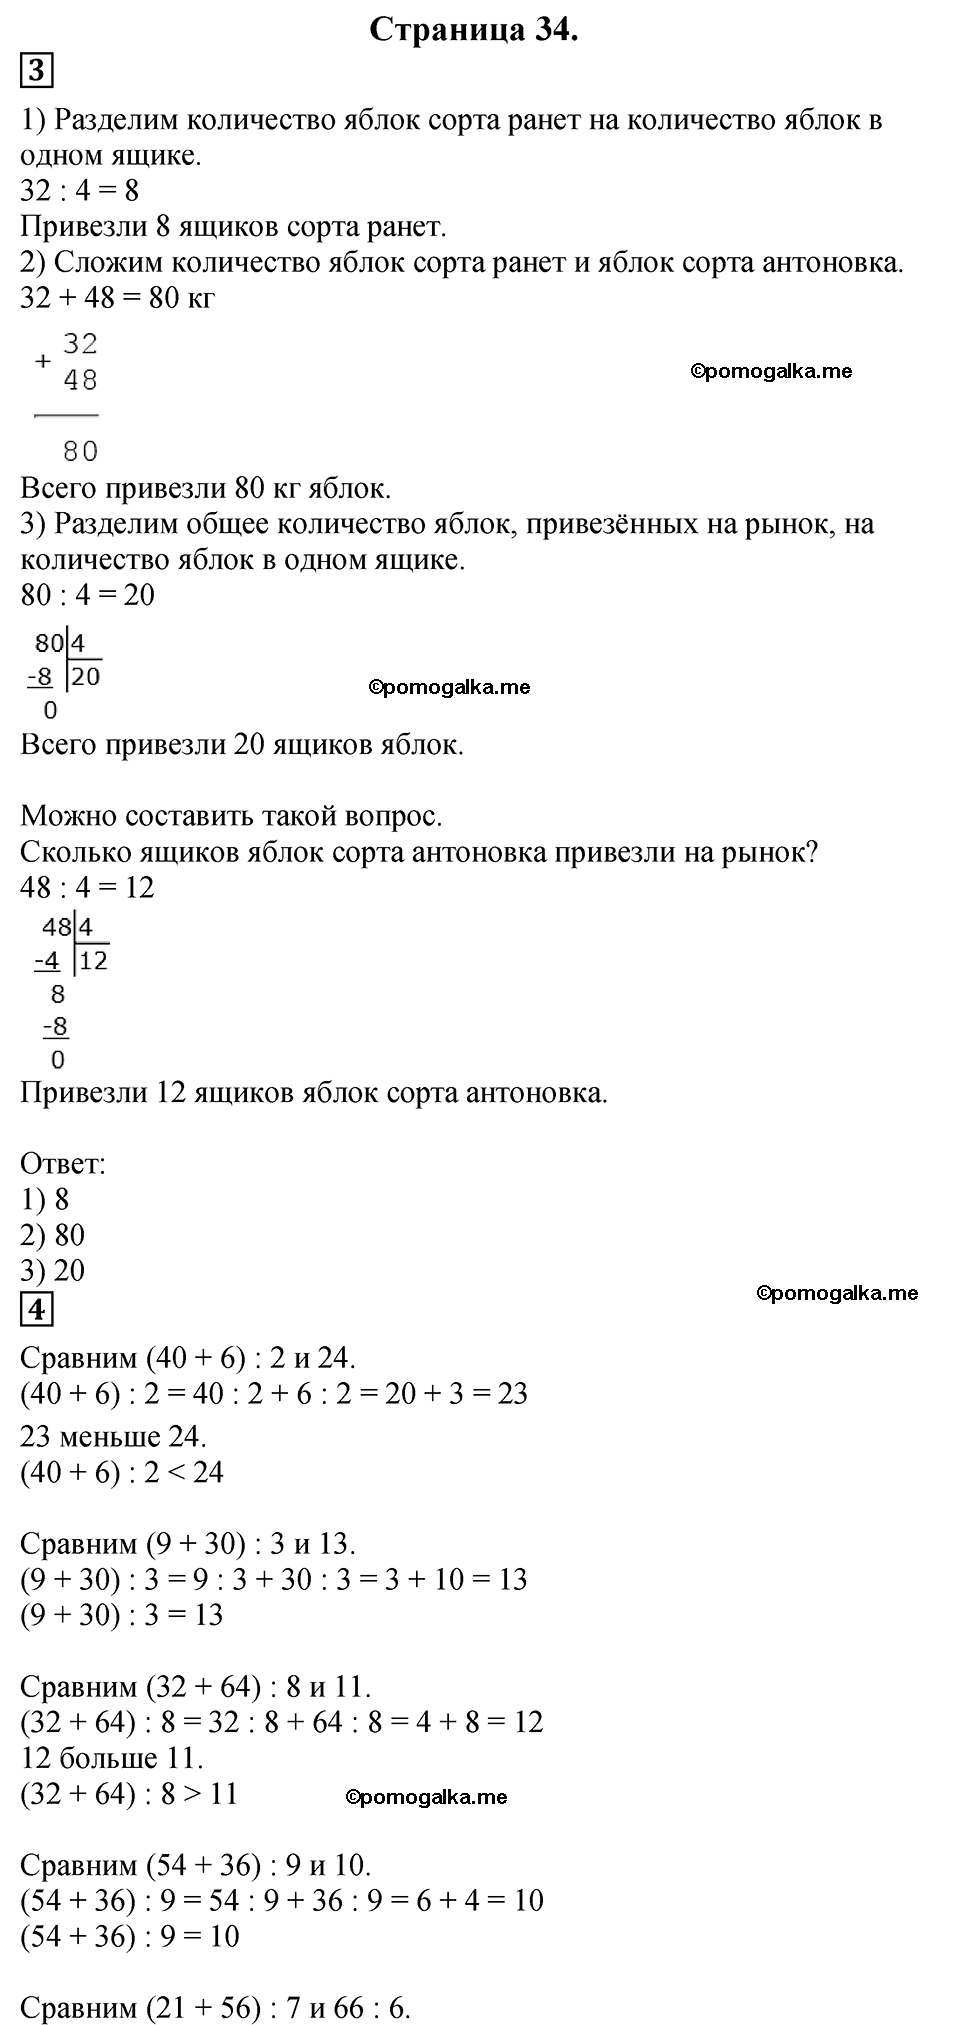 Страница №34 Часть 2 математика 3 класс Дорофеев